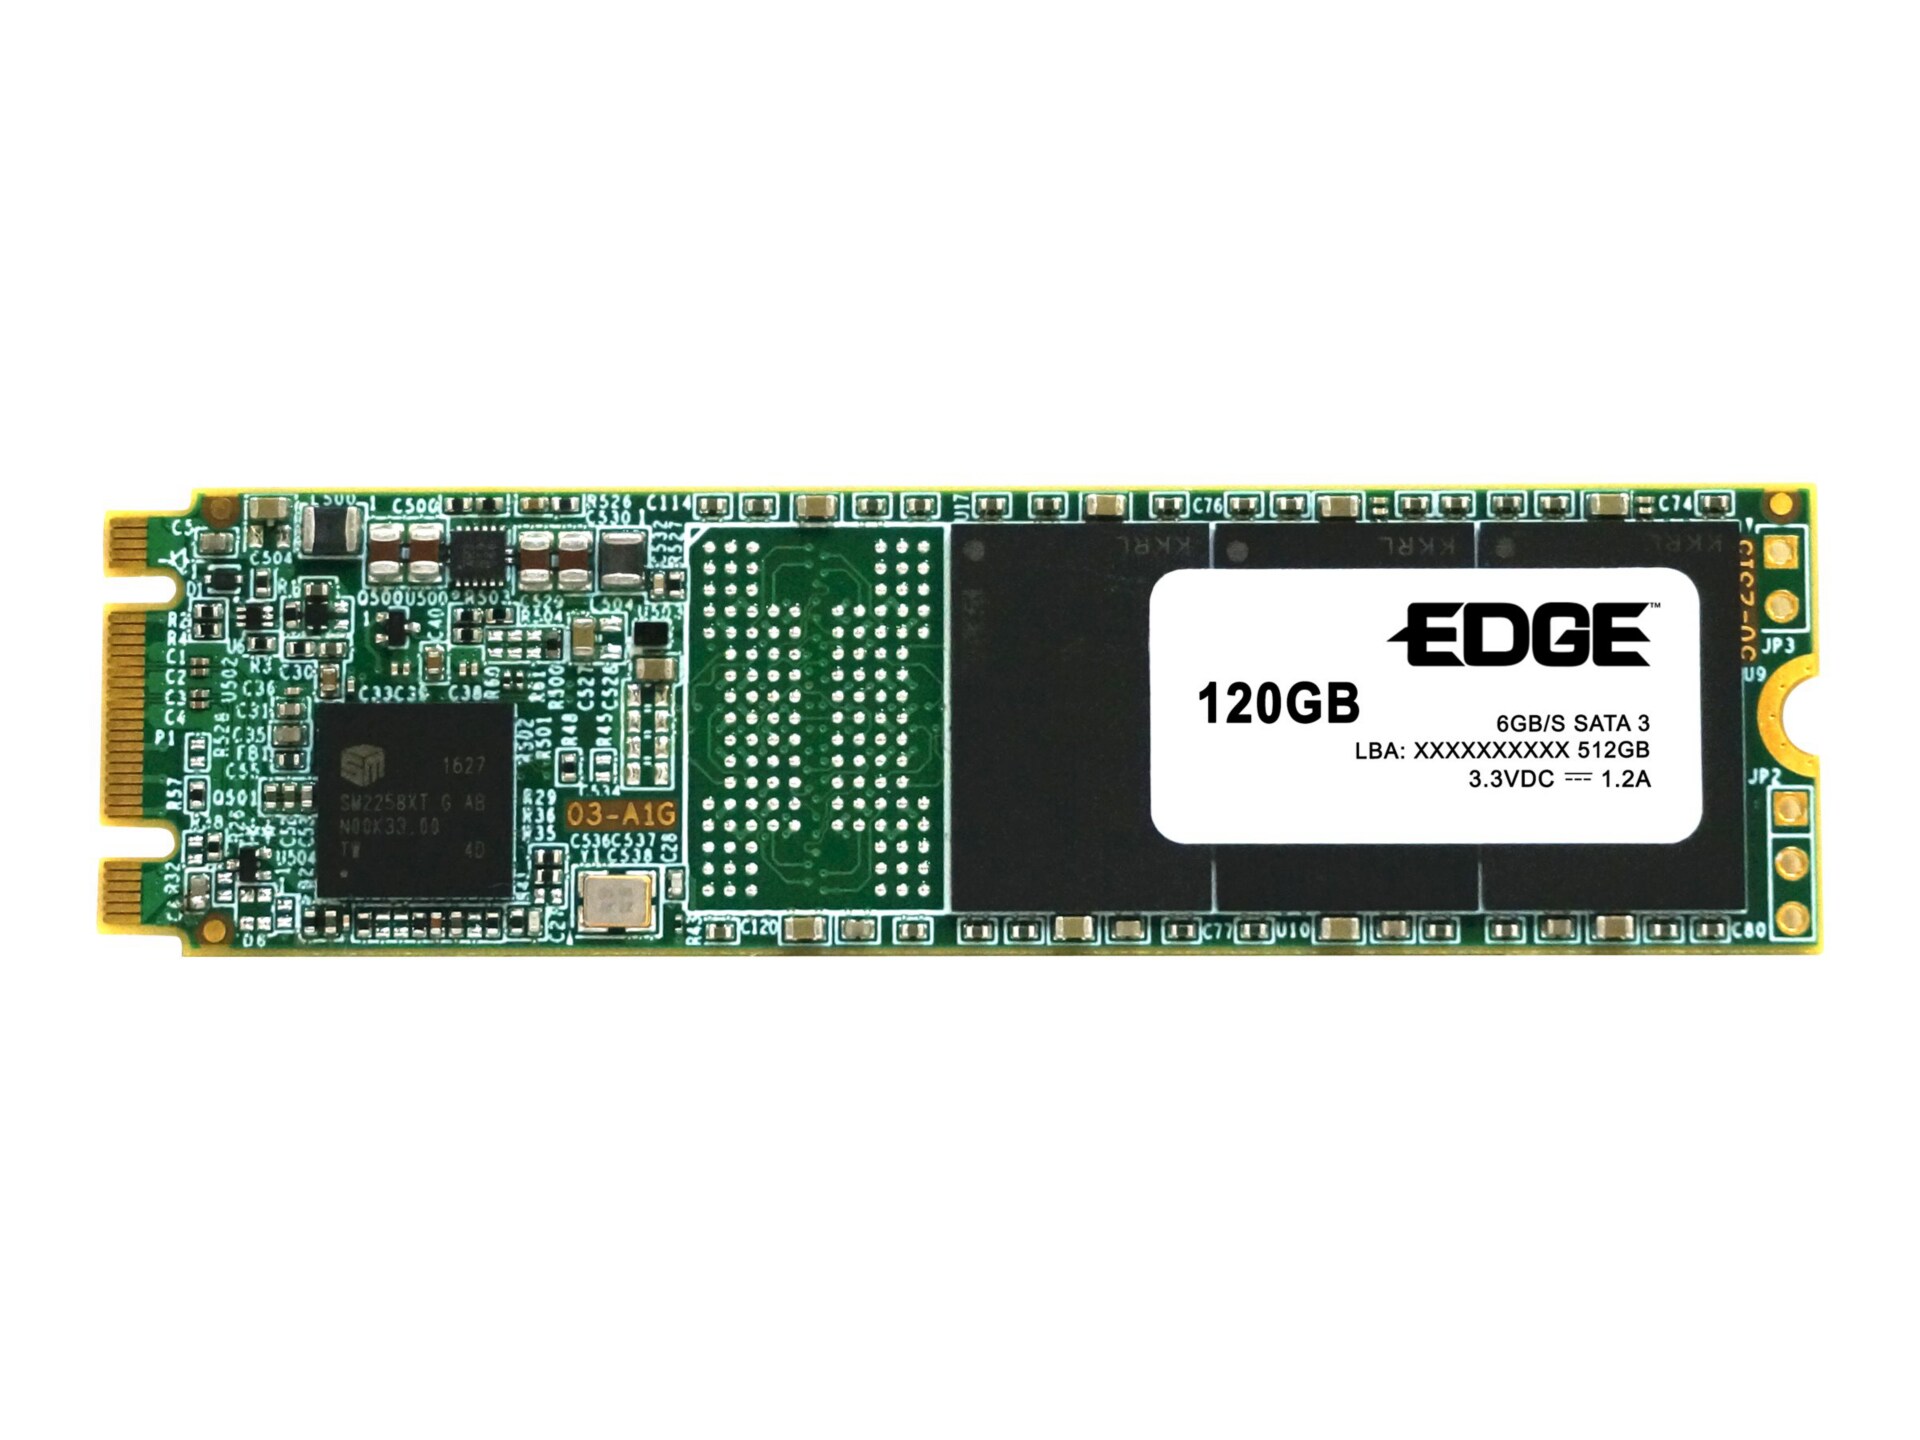 EDGE CLX600 - solid state drive - 120 GB - SATA 6Gb/s